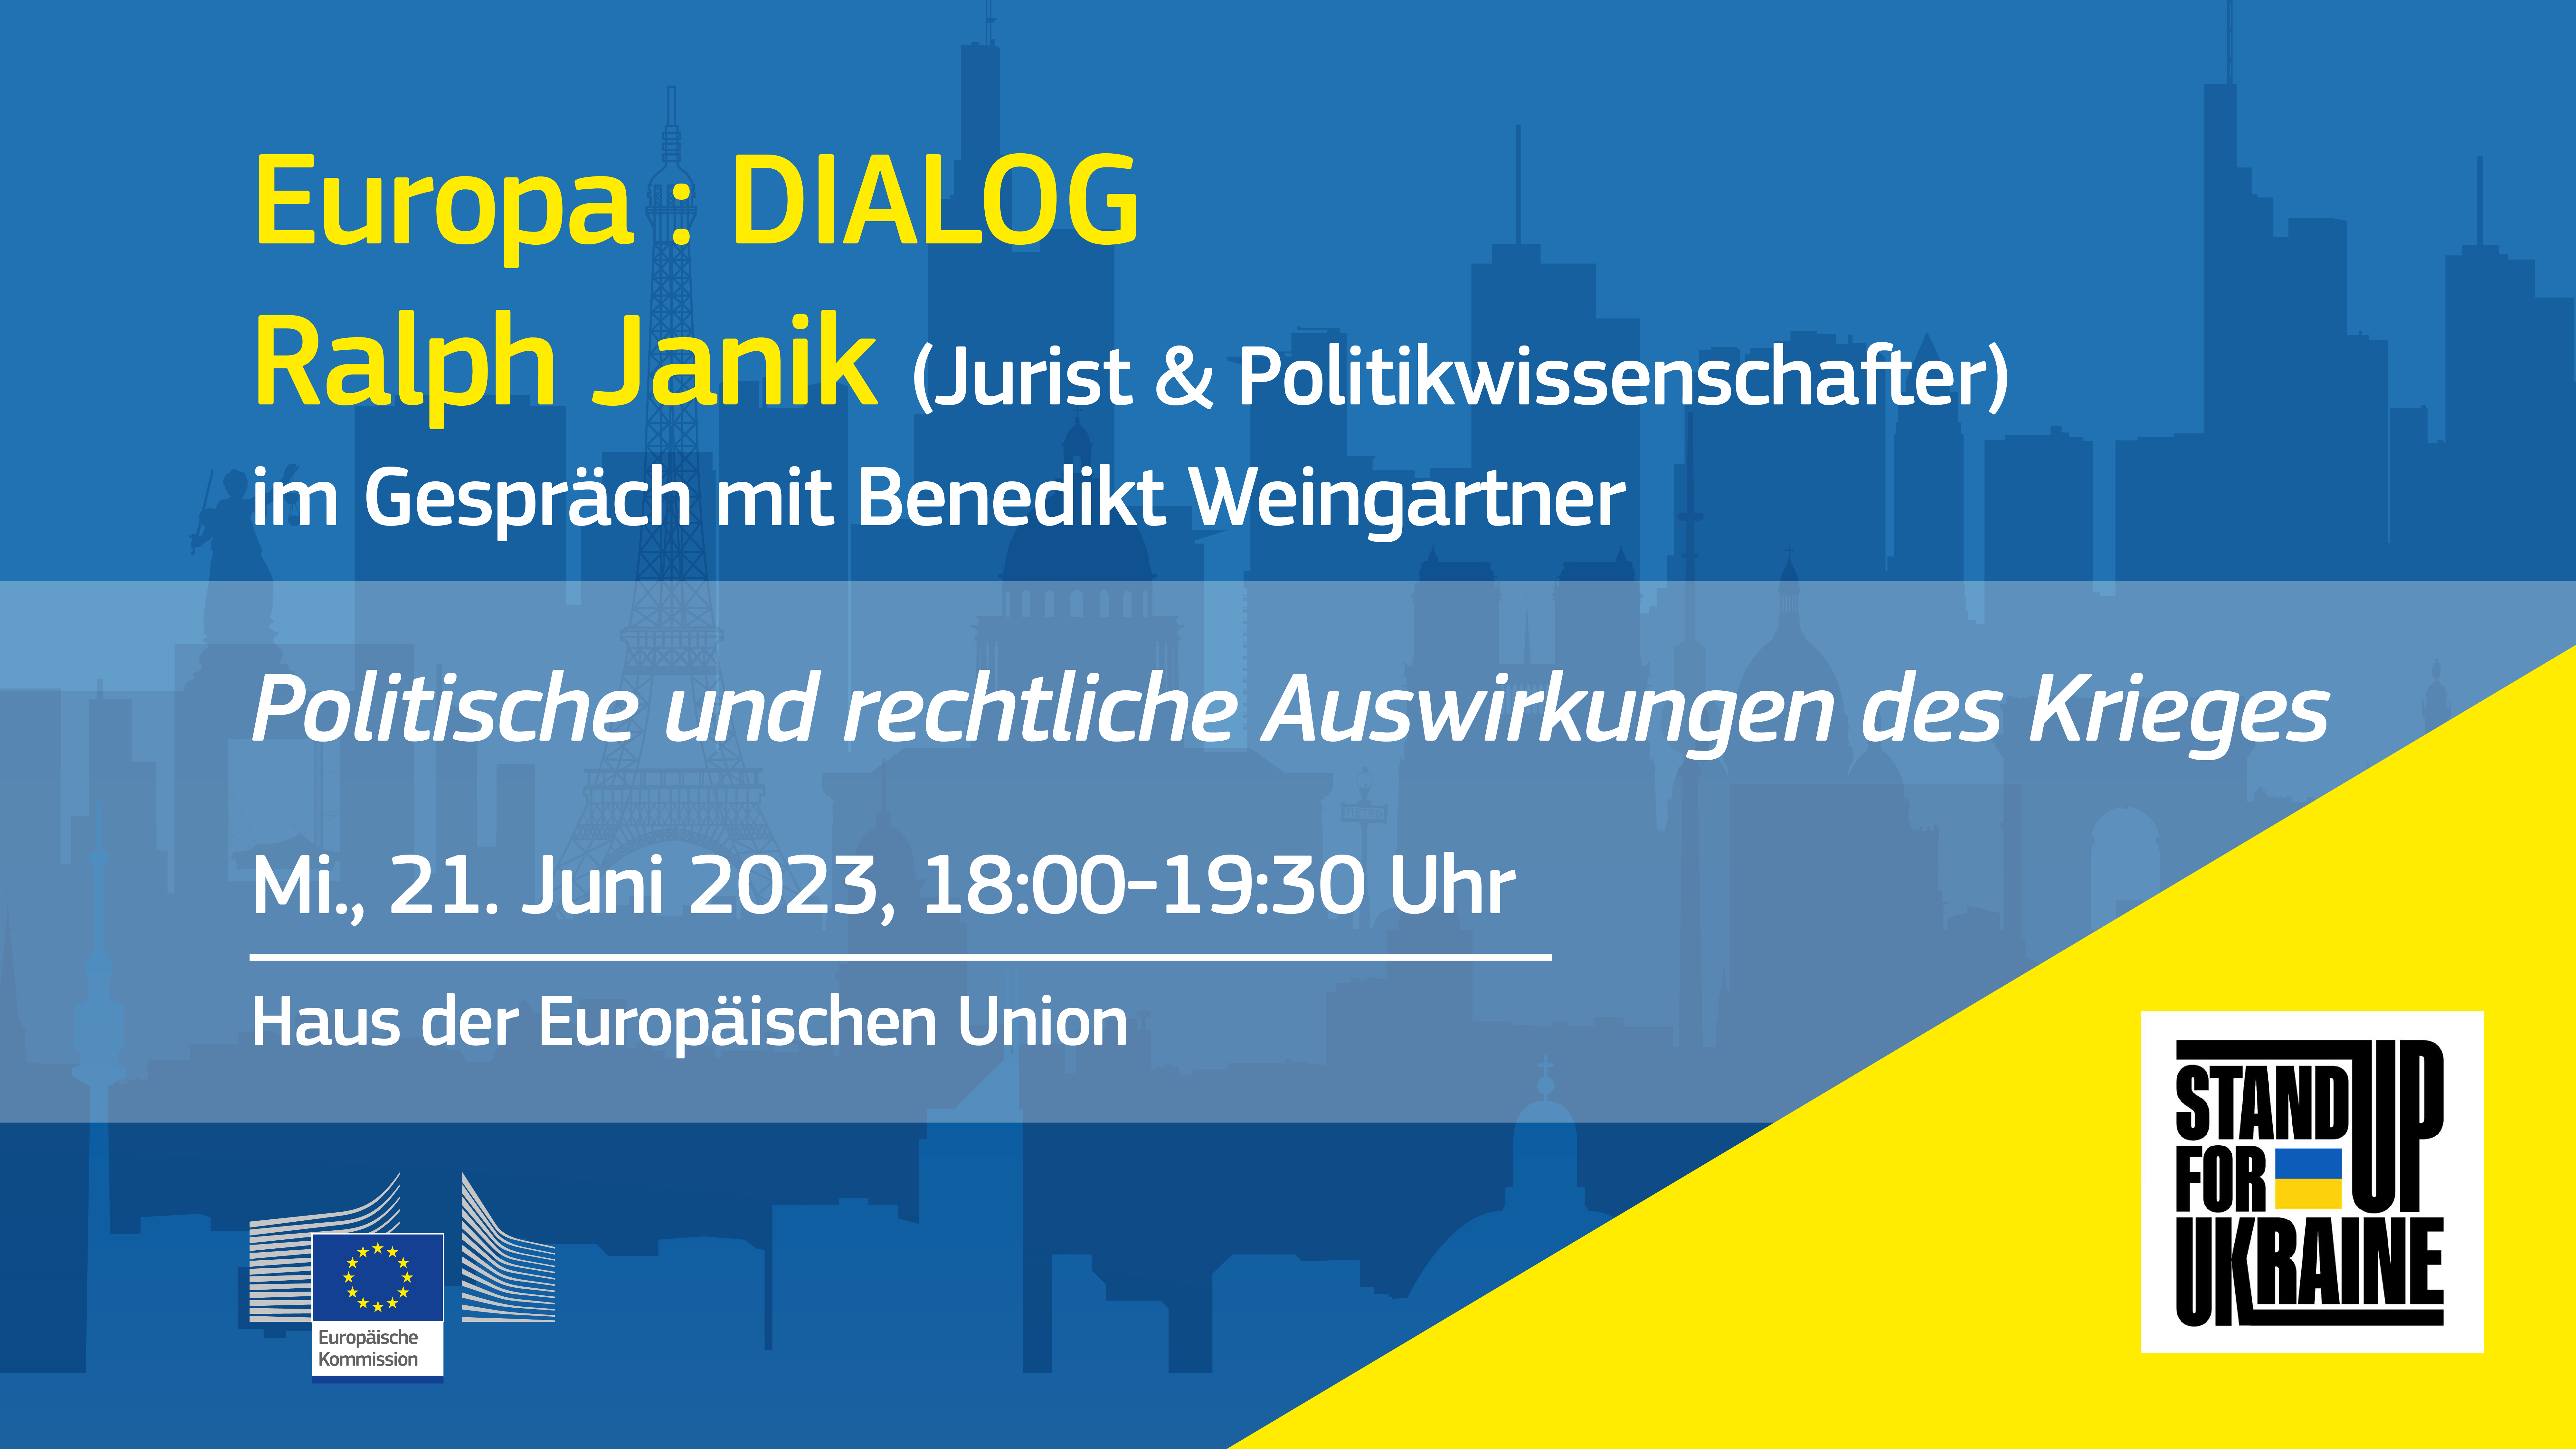 Europa : DIALOG | Politische und rechtliche Auswirkungen des Krieges Ralph Janik (Jurist & Politikwissenschafter) im Gespräch mit Benedikt Weingartner